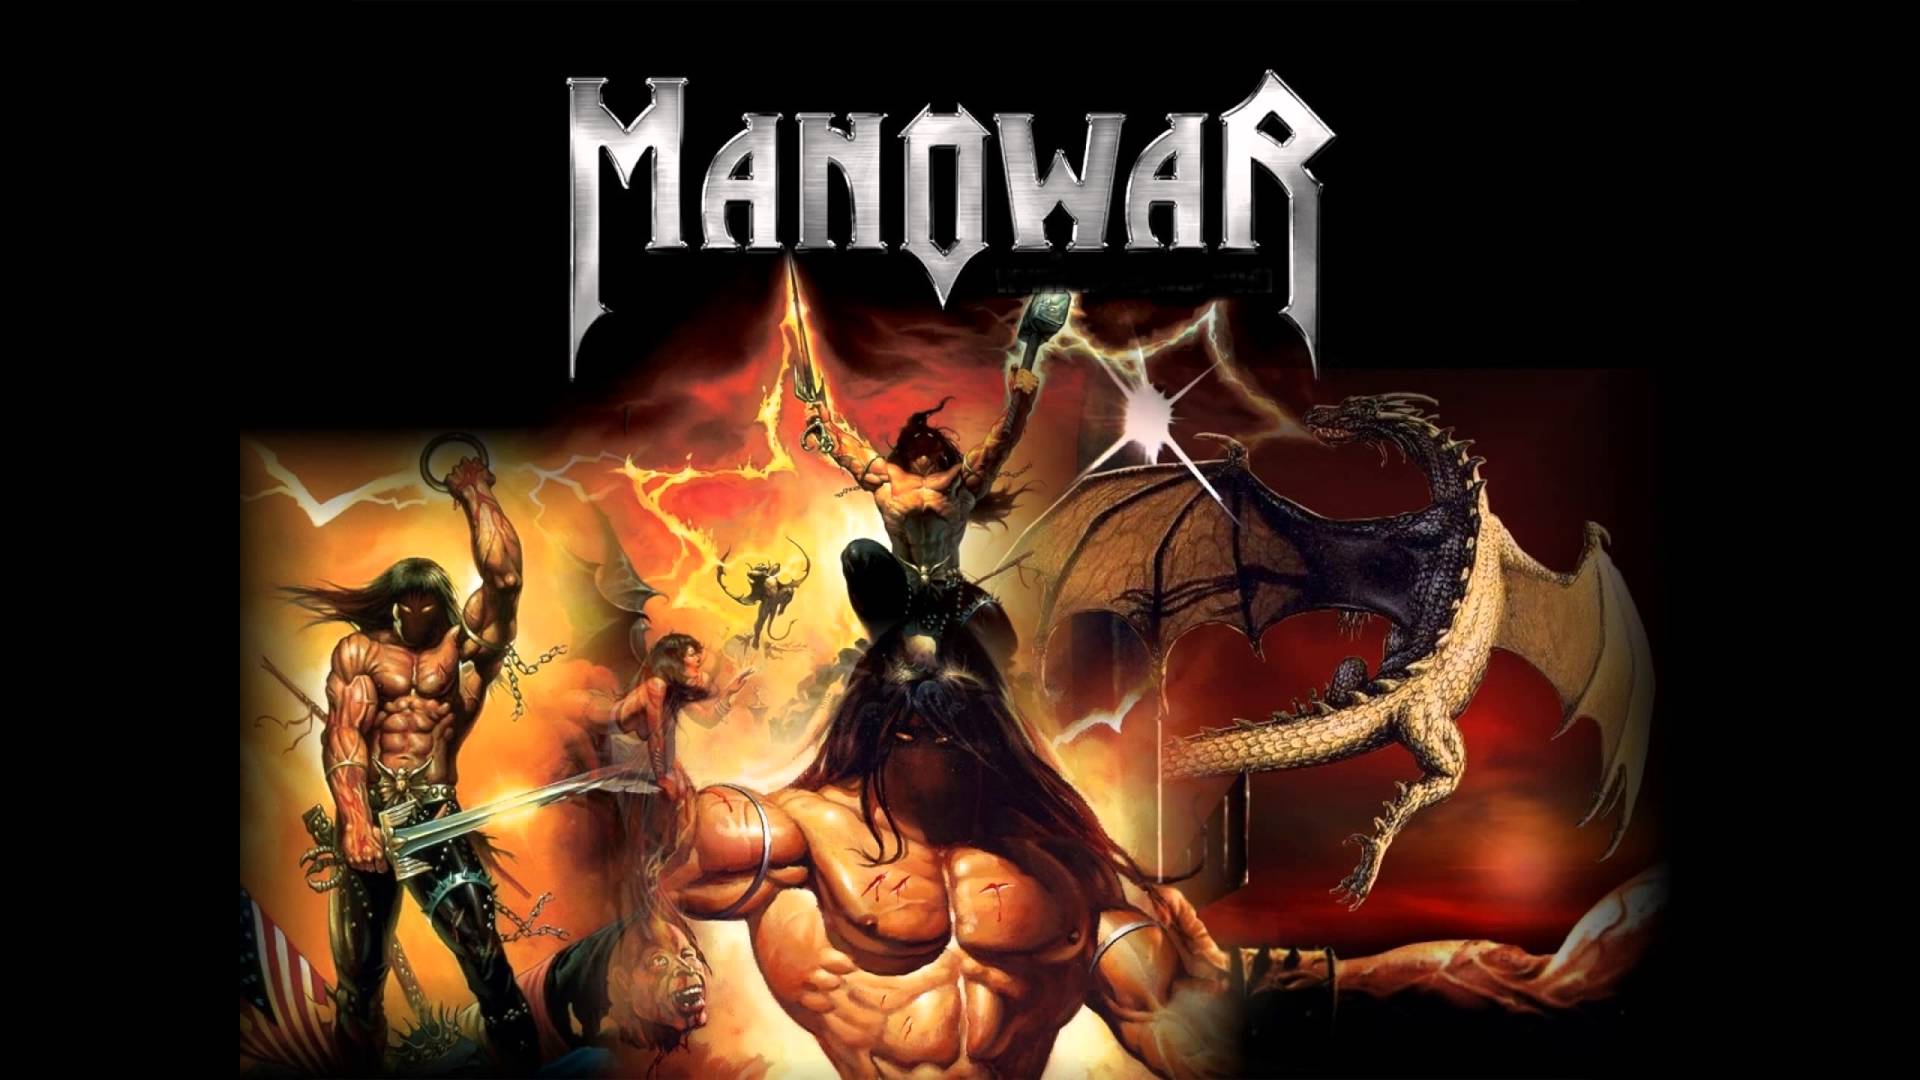 Manowar mp3. Группа Manowar иллюстрации. Мановар постеры. Manowar 2002. Мановар обложки.